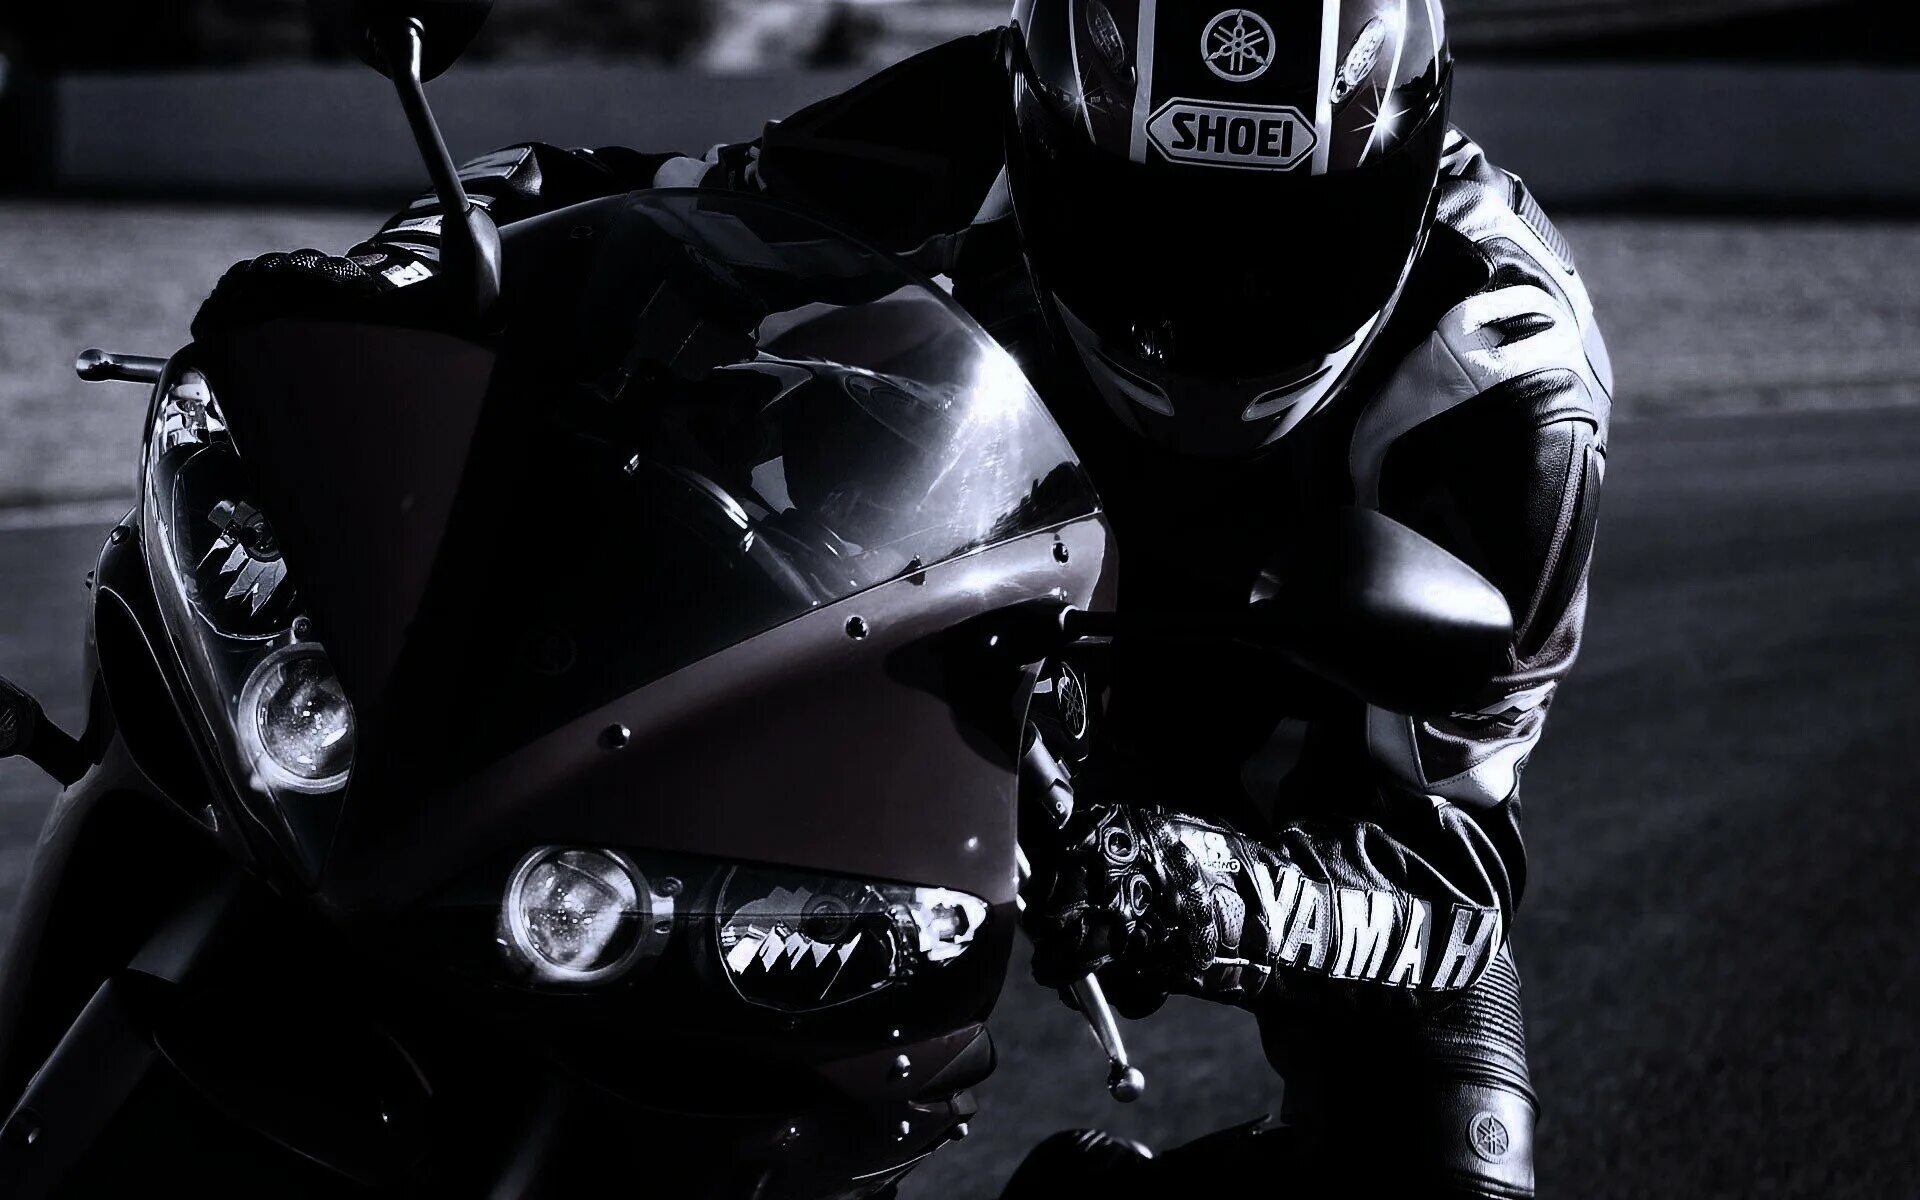 Фото на заставку пацанам. Yamaha r6 черный с мотогонщиком. Ямаха р1 черная. Мотоциклист. Мотоциклист в черном.